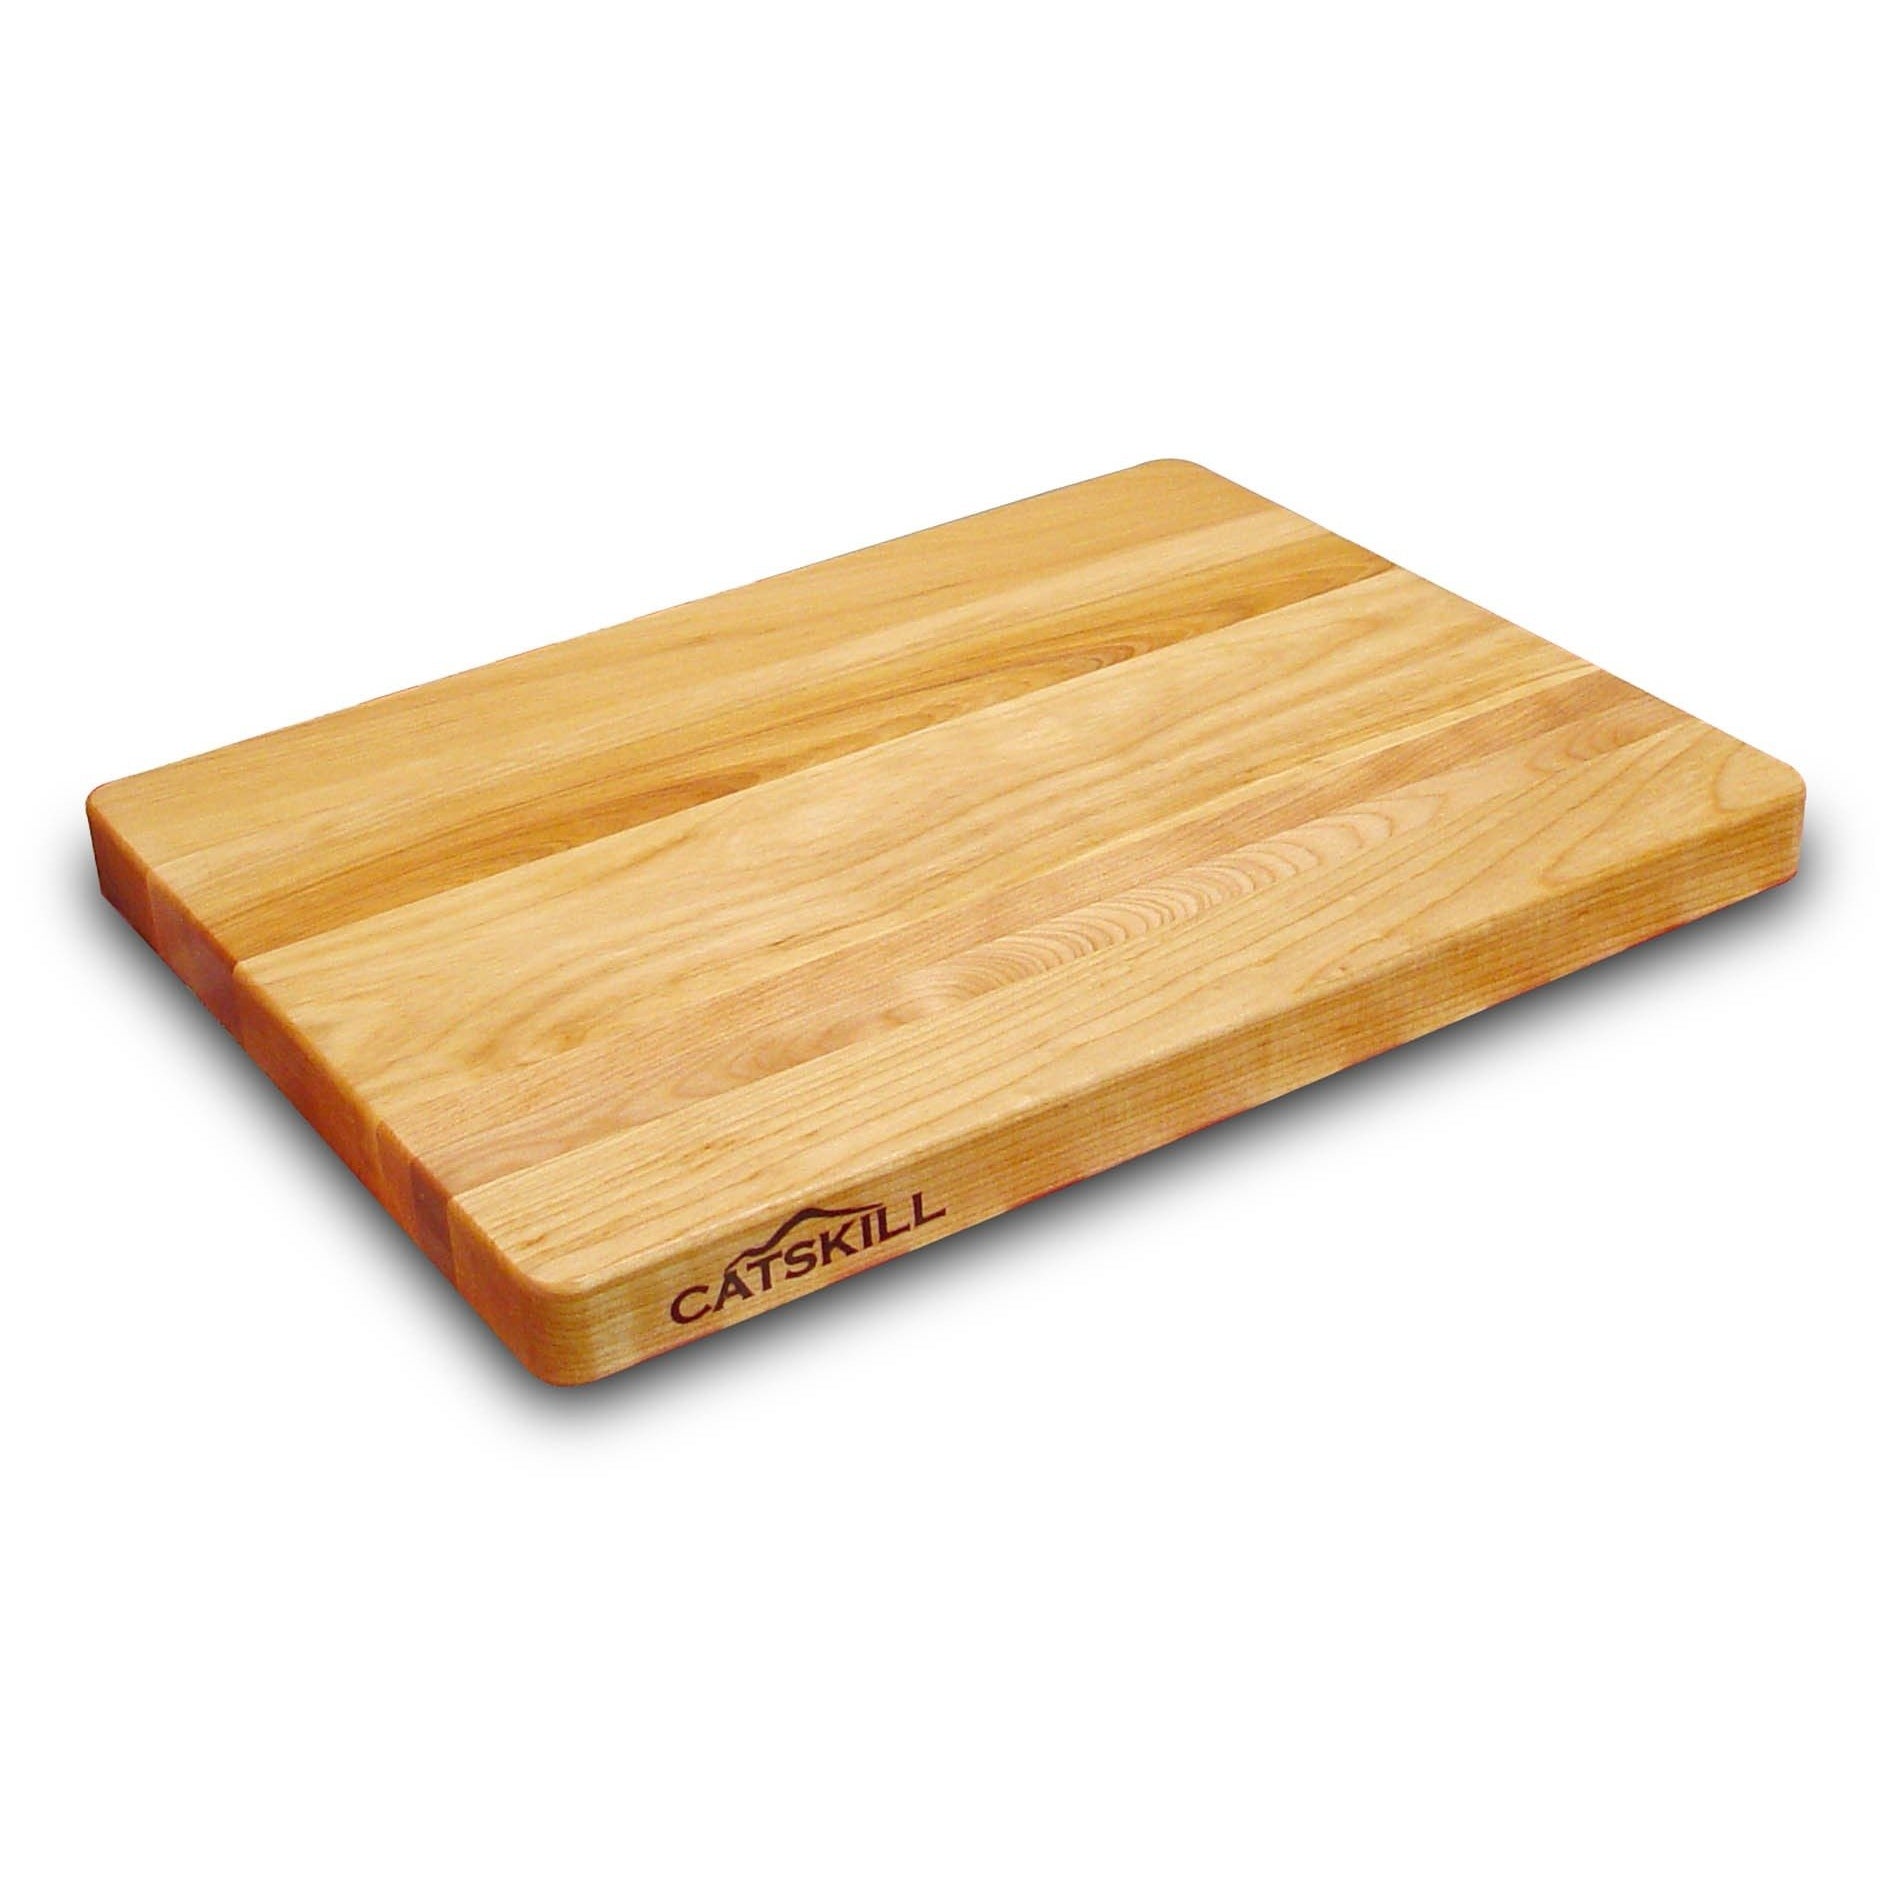 Catskill Professional Plain Board